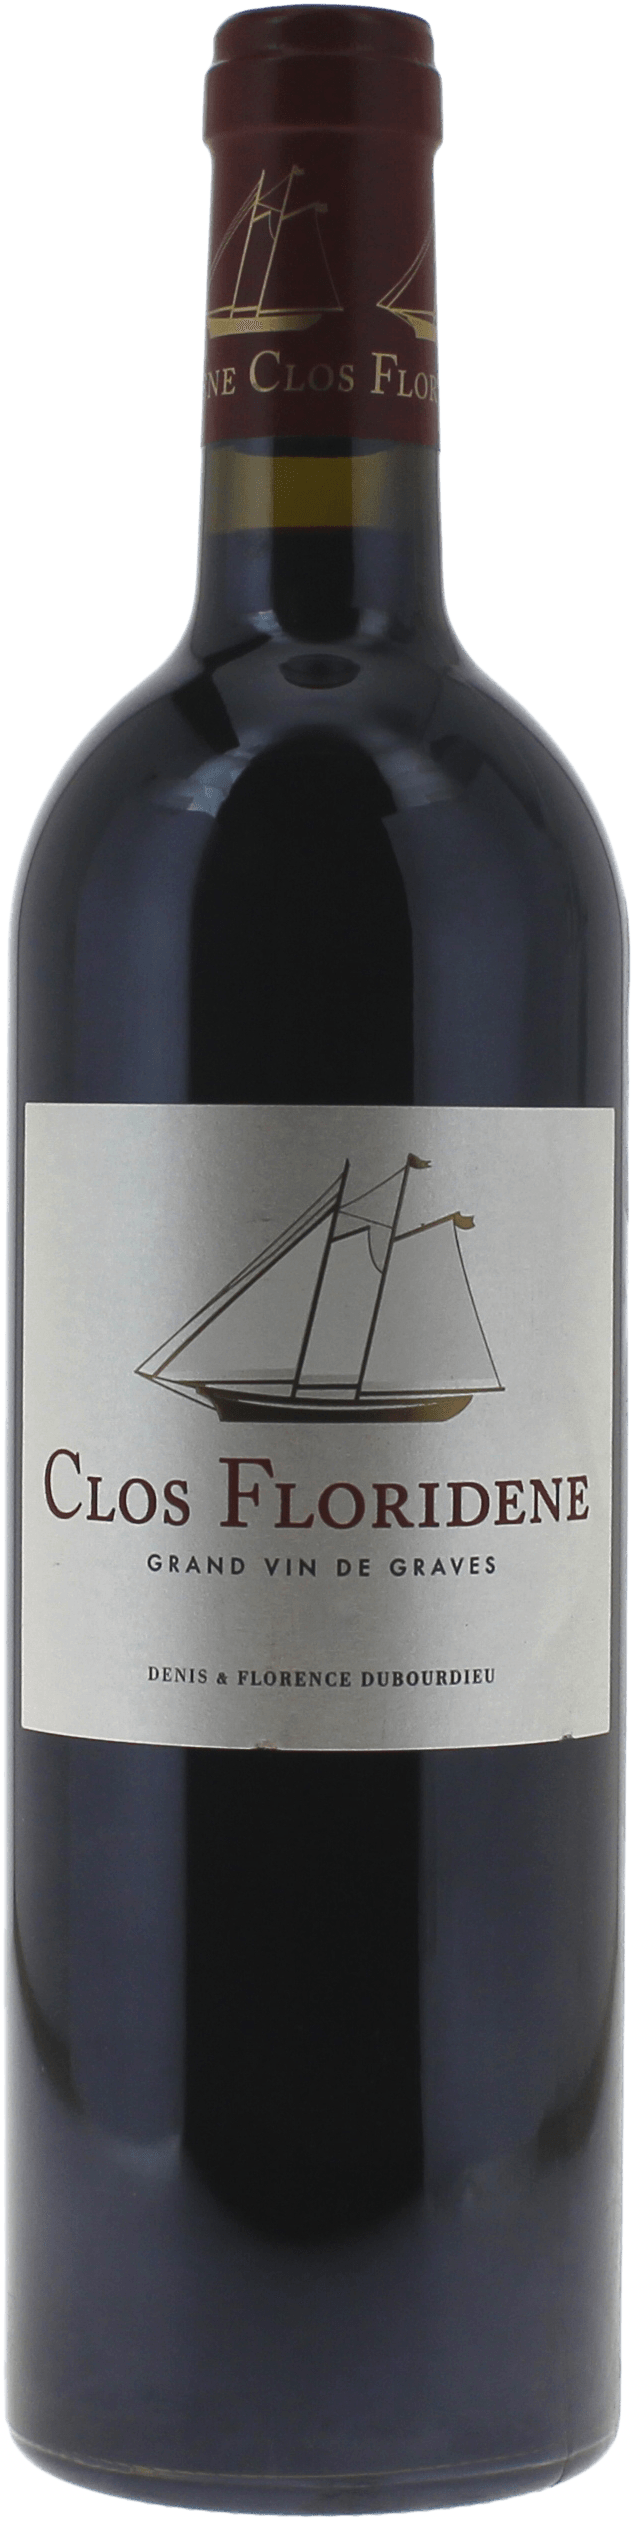 Clos floridne rouge 2018  Graves, Bordeaux rouge